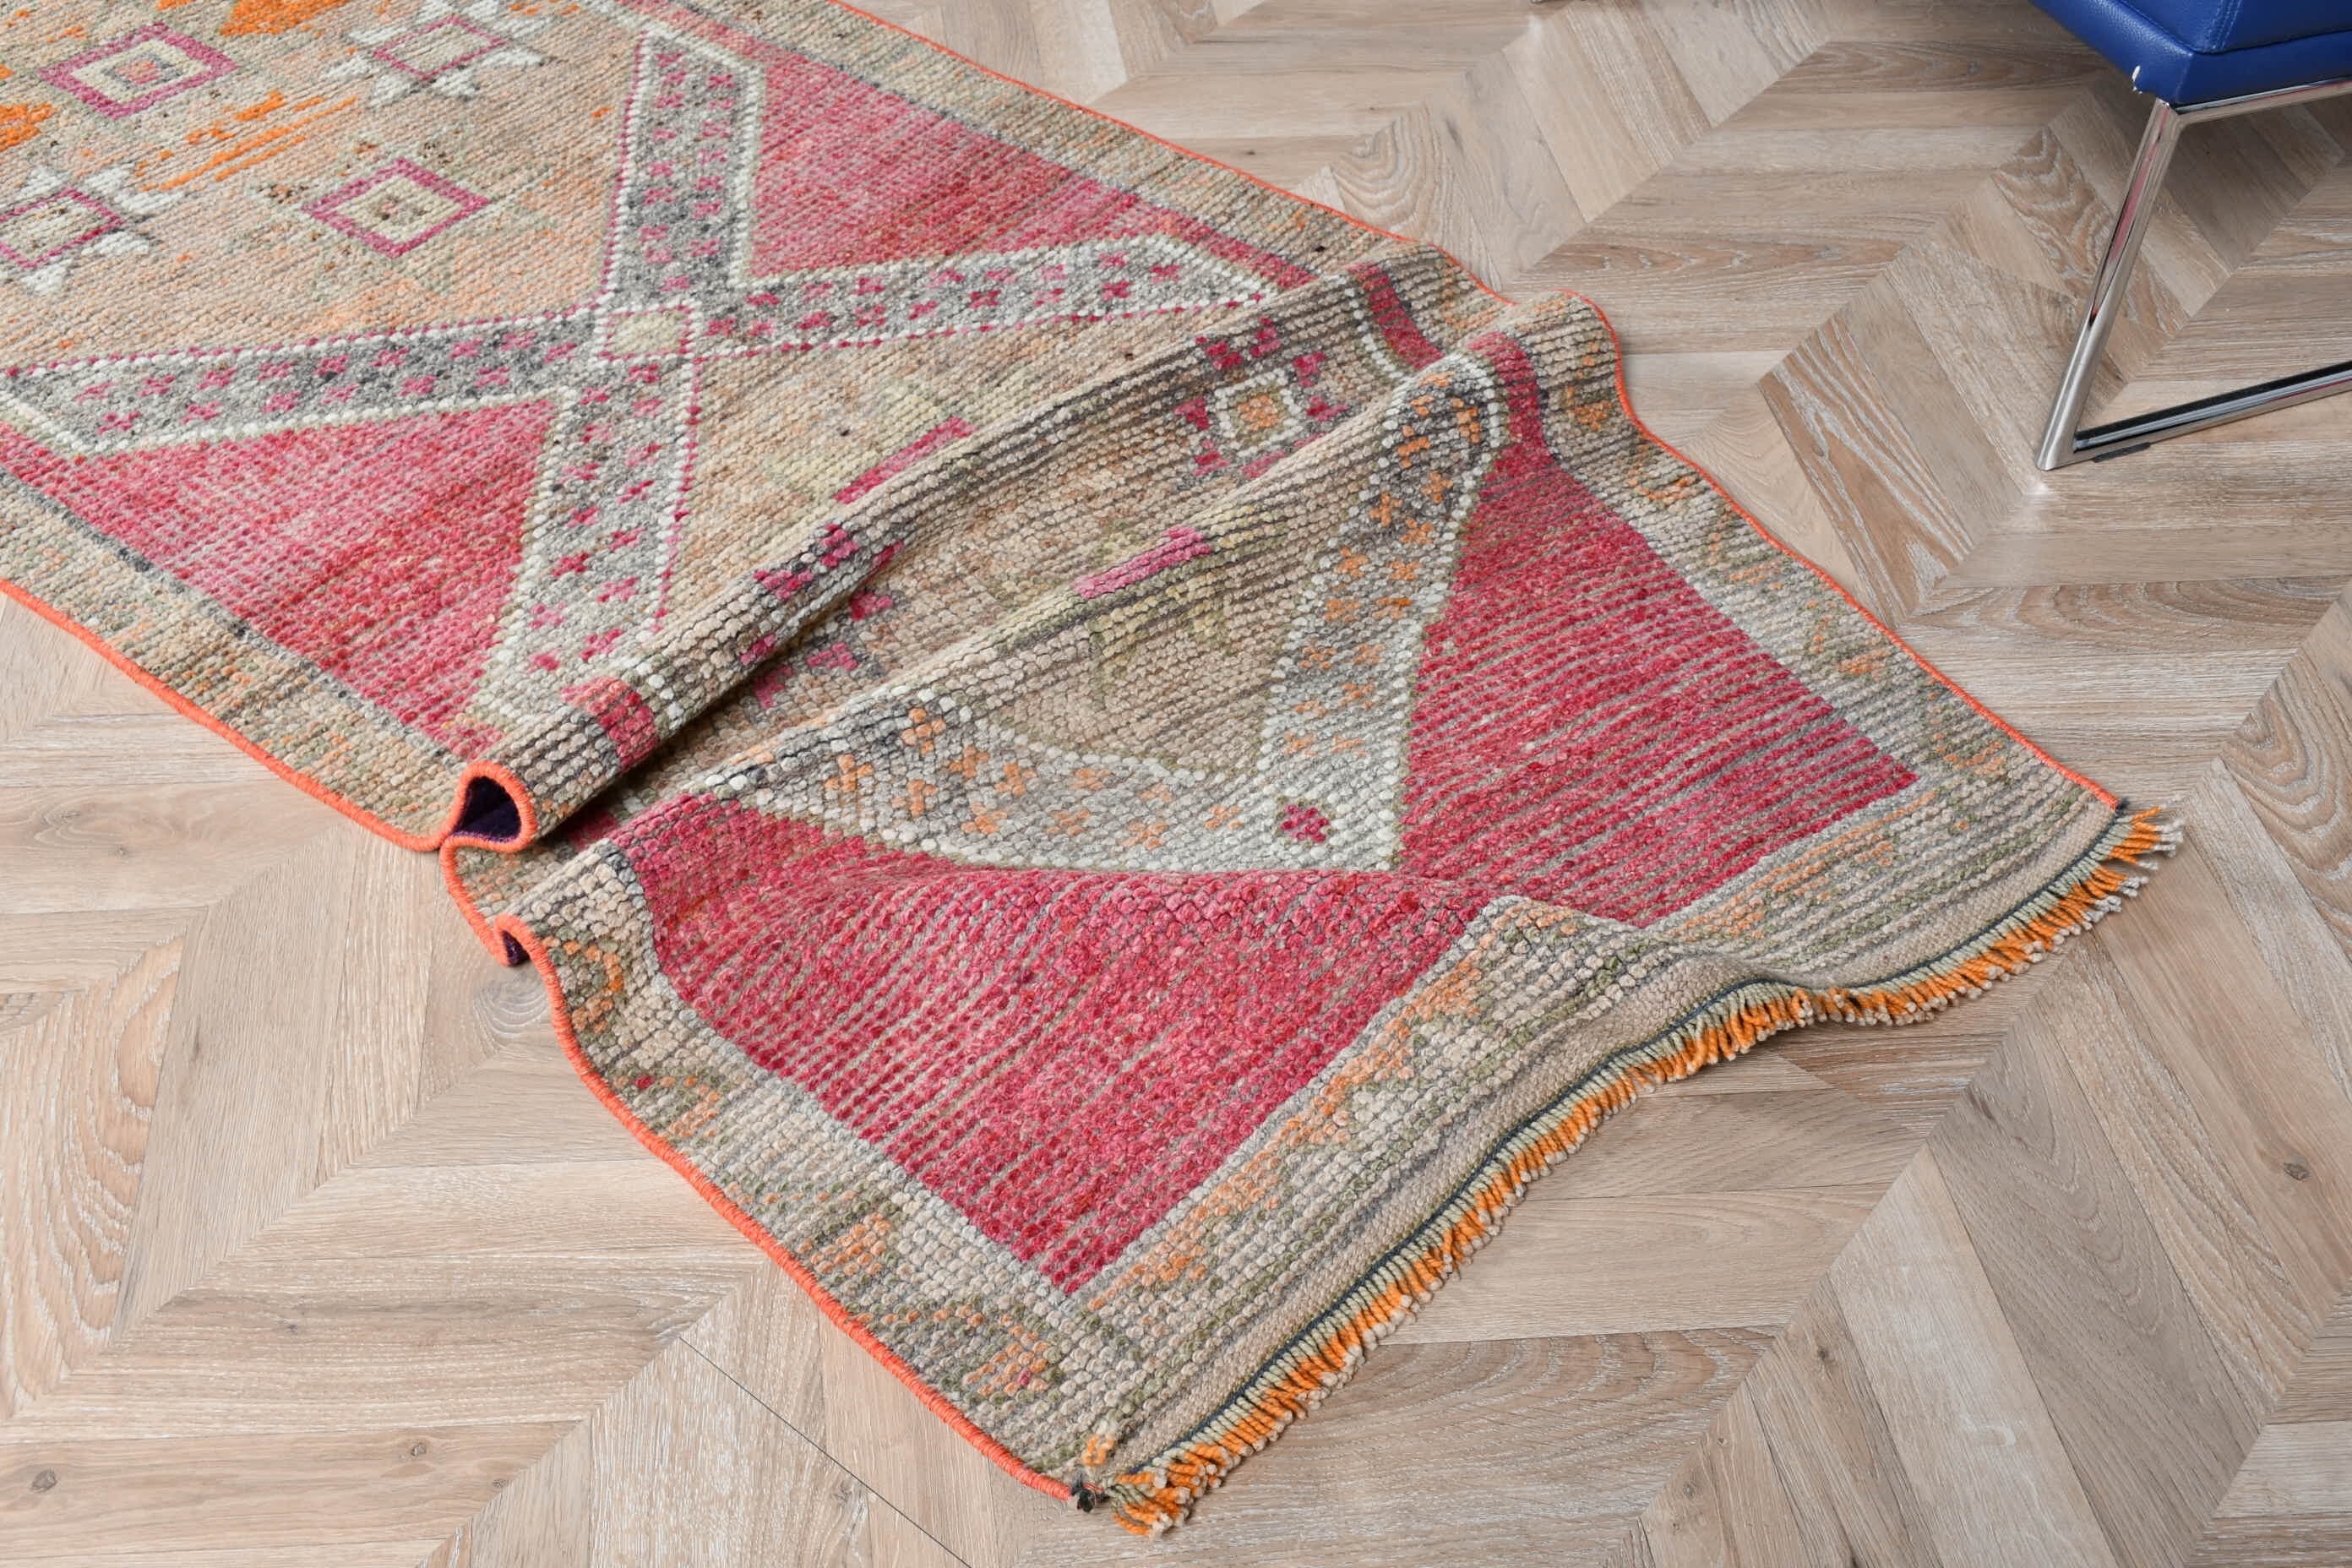 Turkish Rugs, Antique Rug, Rugs for Runner, Bedroom Rug, Vintage Rug, Hallway Rugs, Pink Kitchen Rugs, 2.8x9.7 ft Runner Rugs, Office Rug